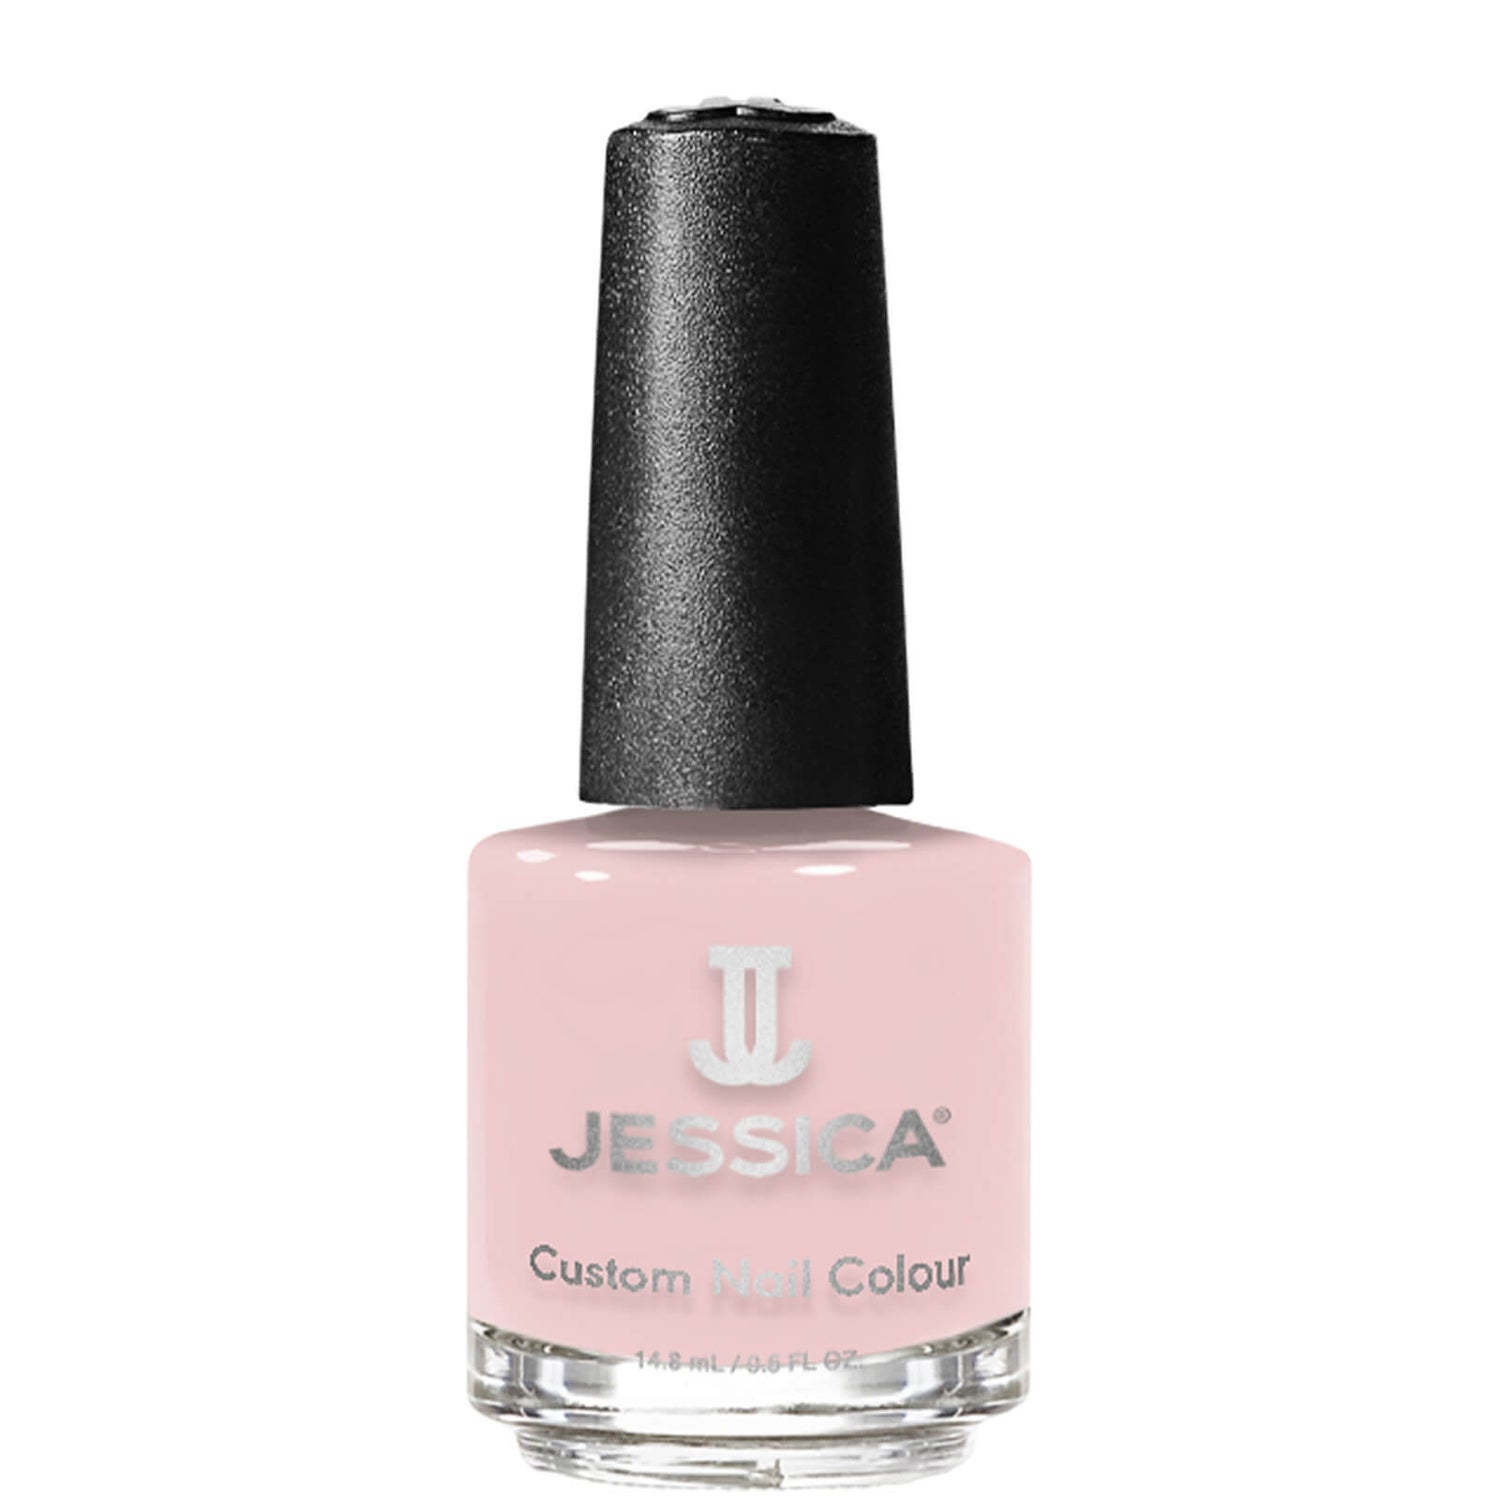 Smalto Color 14,8 ml (varie tonalità) Jessica Custom